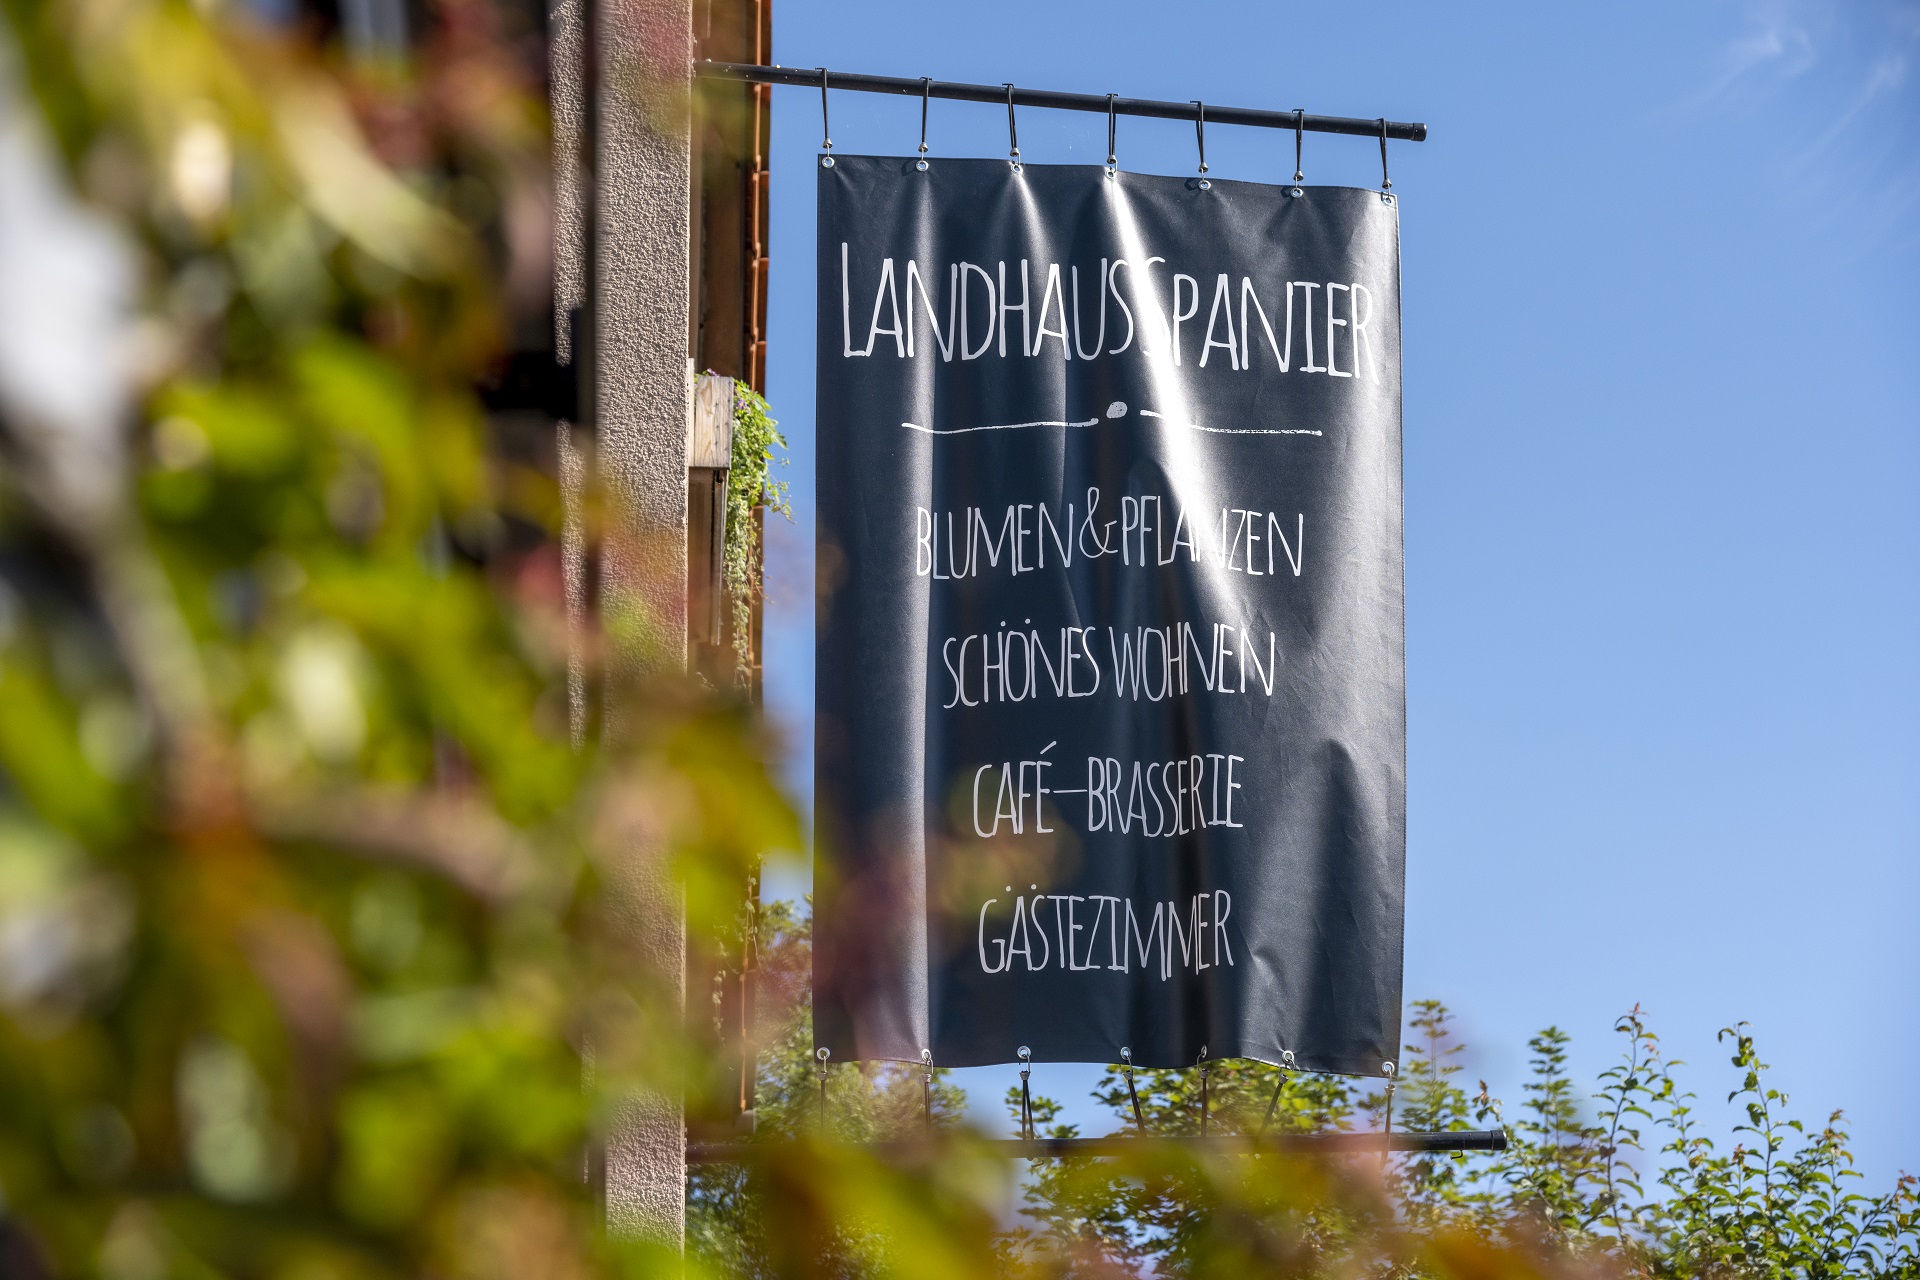 Le drapeau sur la maison de Landhaus Spanier avec les mots suivants : Fleurs et plantes, Belle vie, Café-Brasserie, Chambre d'hôtes. Au premier plan, vous pouvez voir une plante floue.